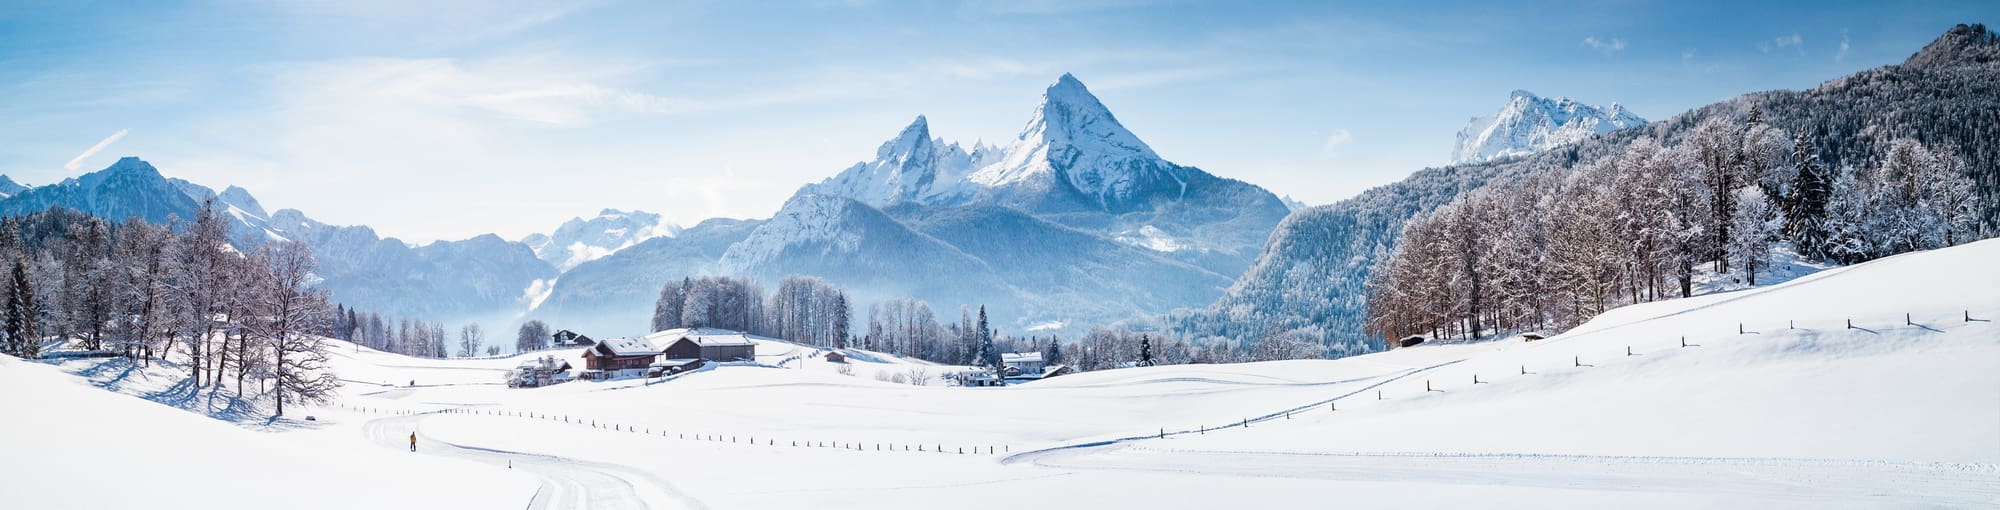 Winterurlaub im Berchtesgadener Land